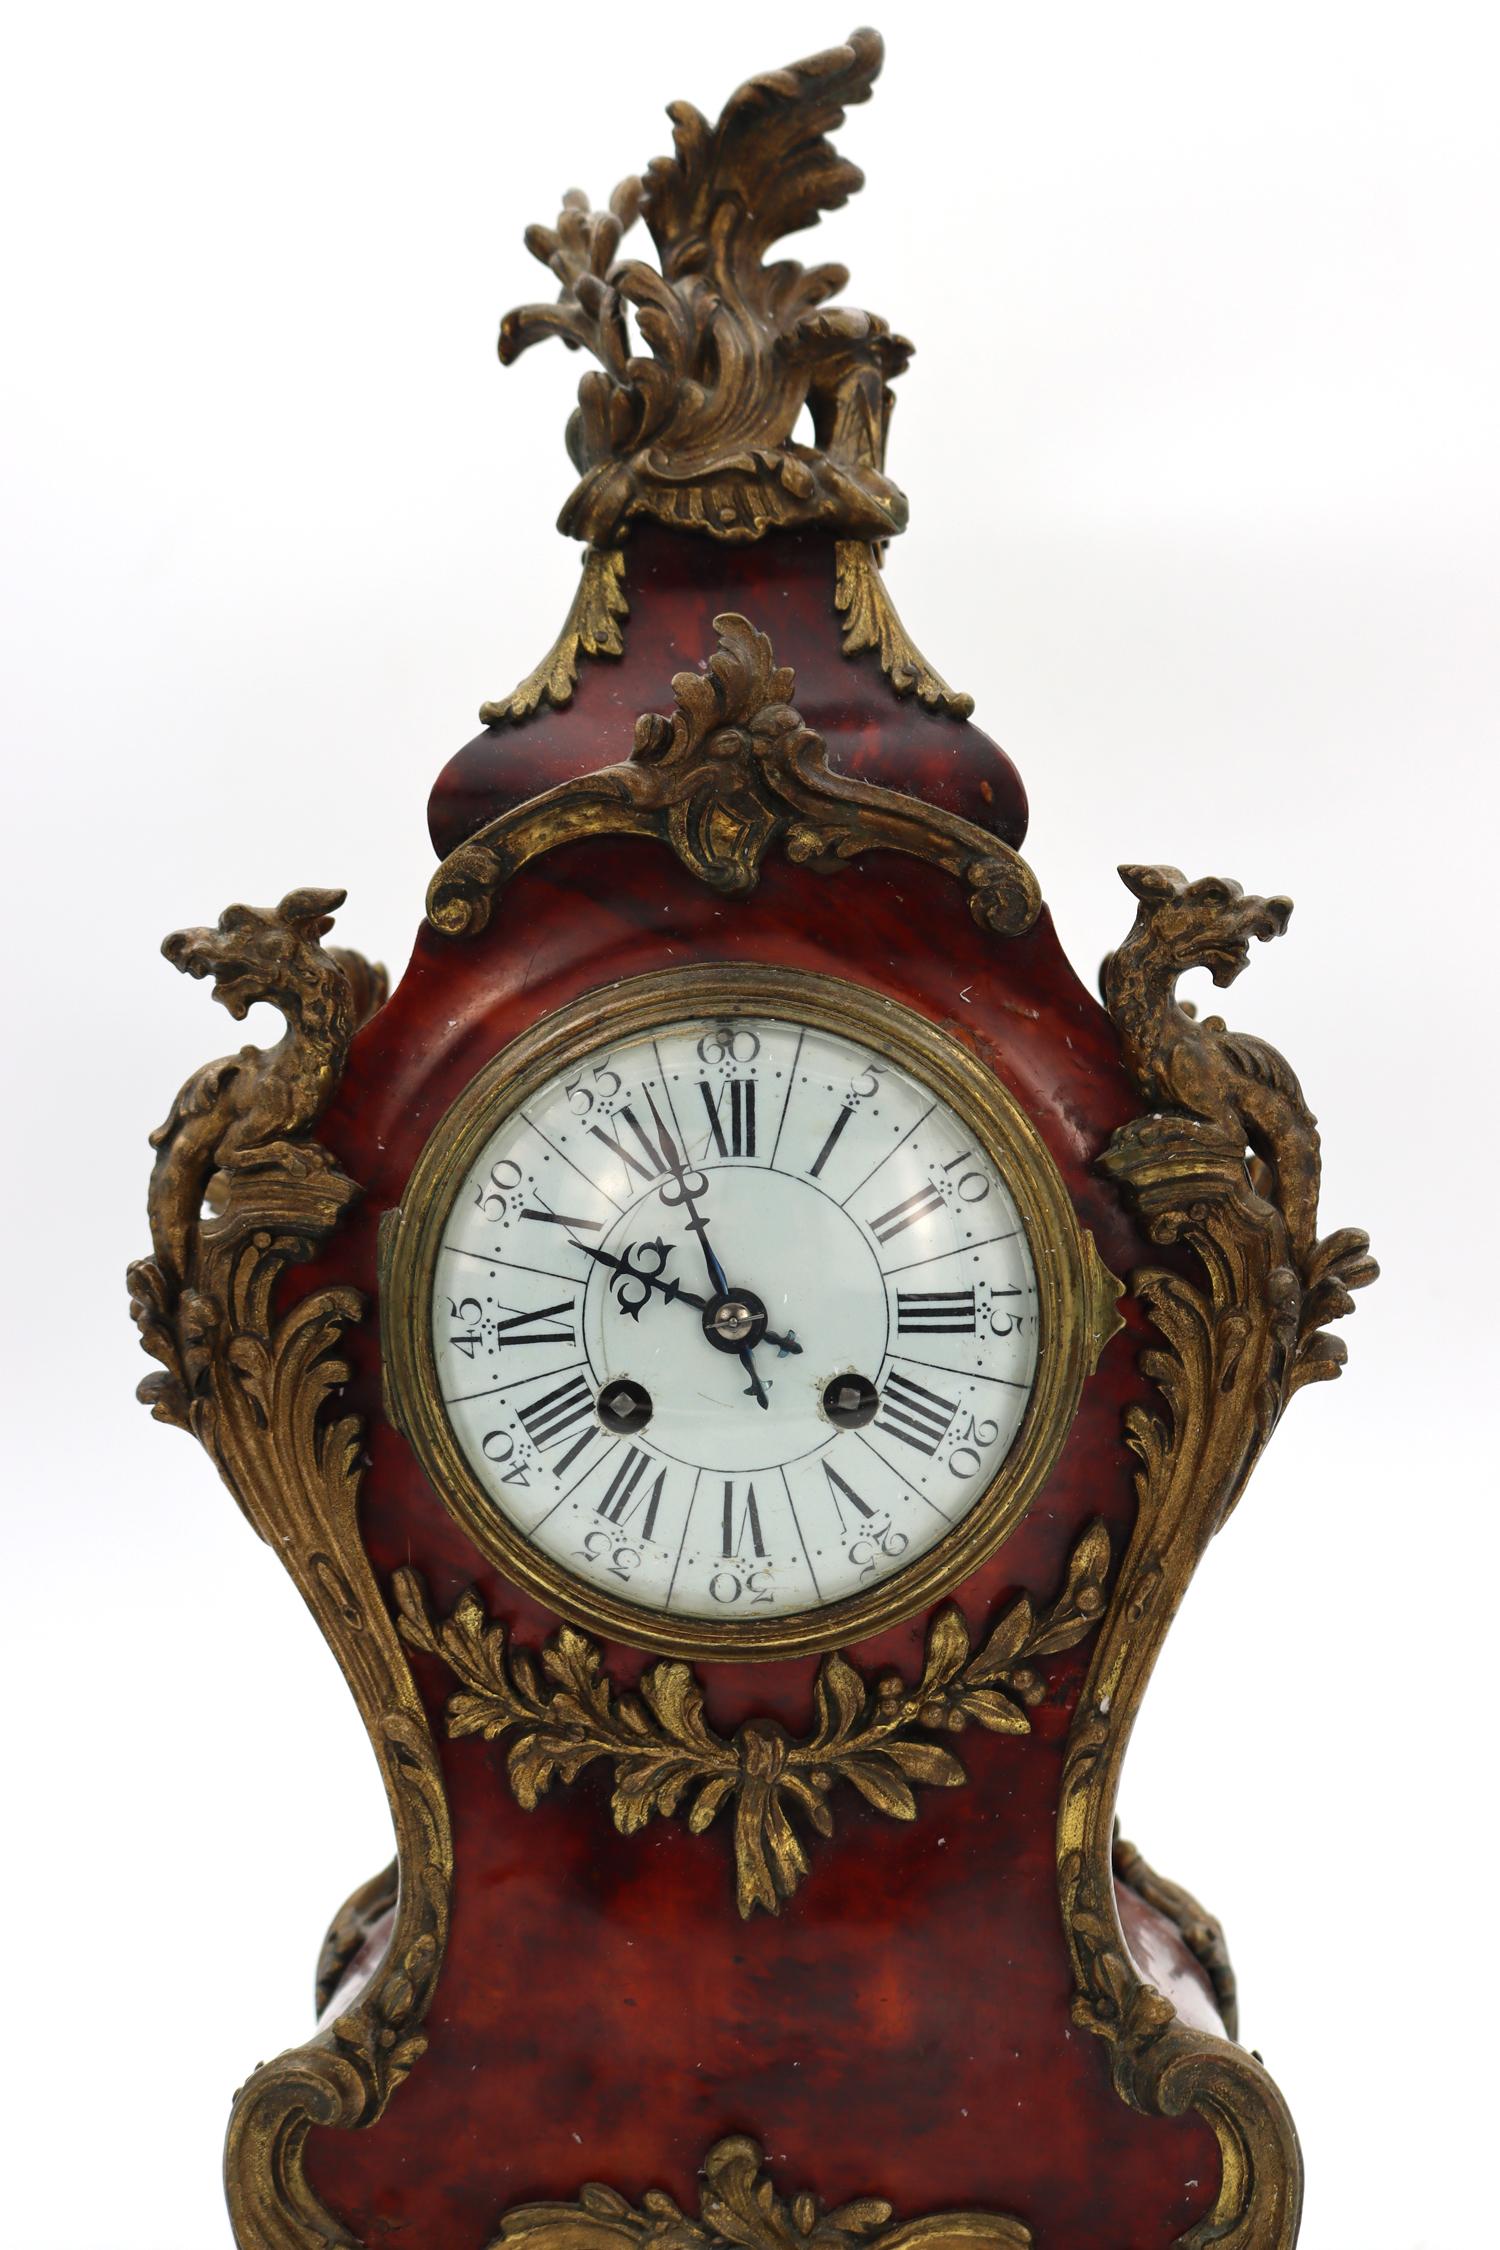 Uhr, Kartell im Stil Louis XV, 19. Jahrhundert, Periode Napoleon III.
Maße: H: 45 cm, B: 22 cm, T: 14 cm.